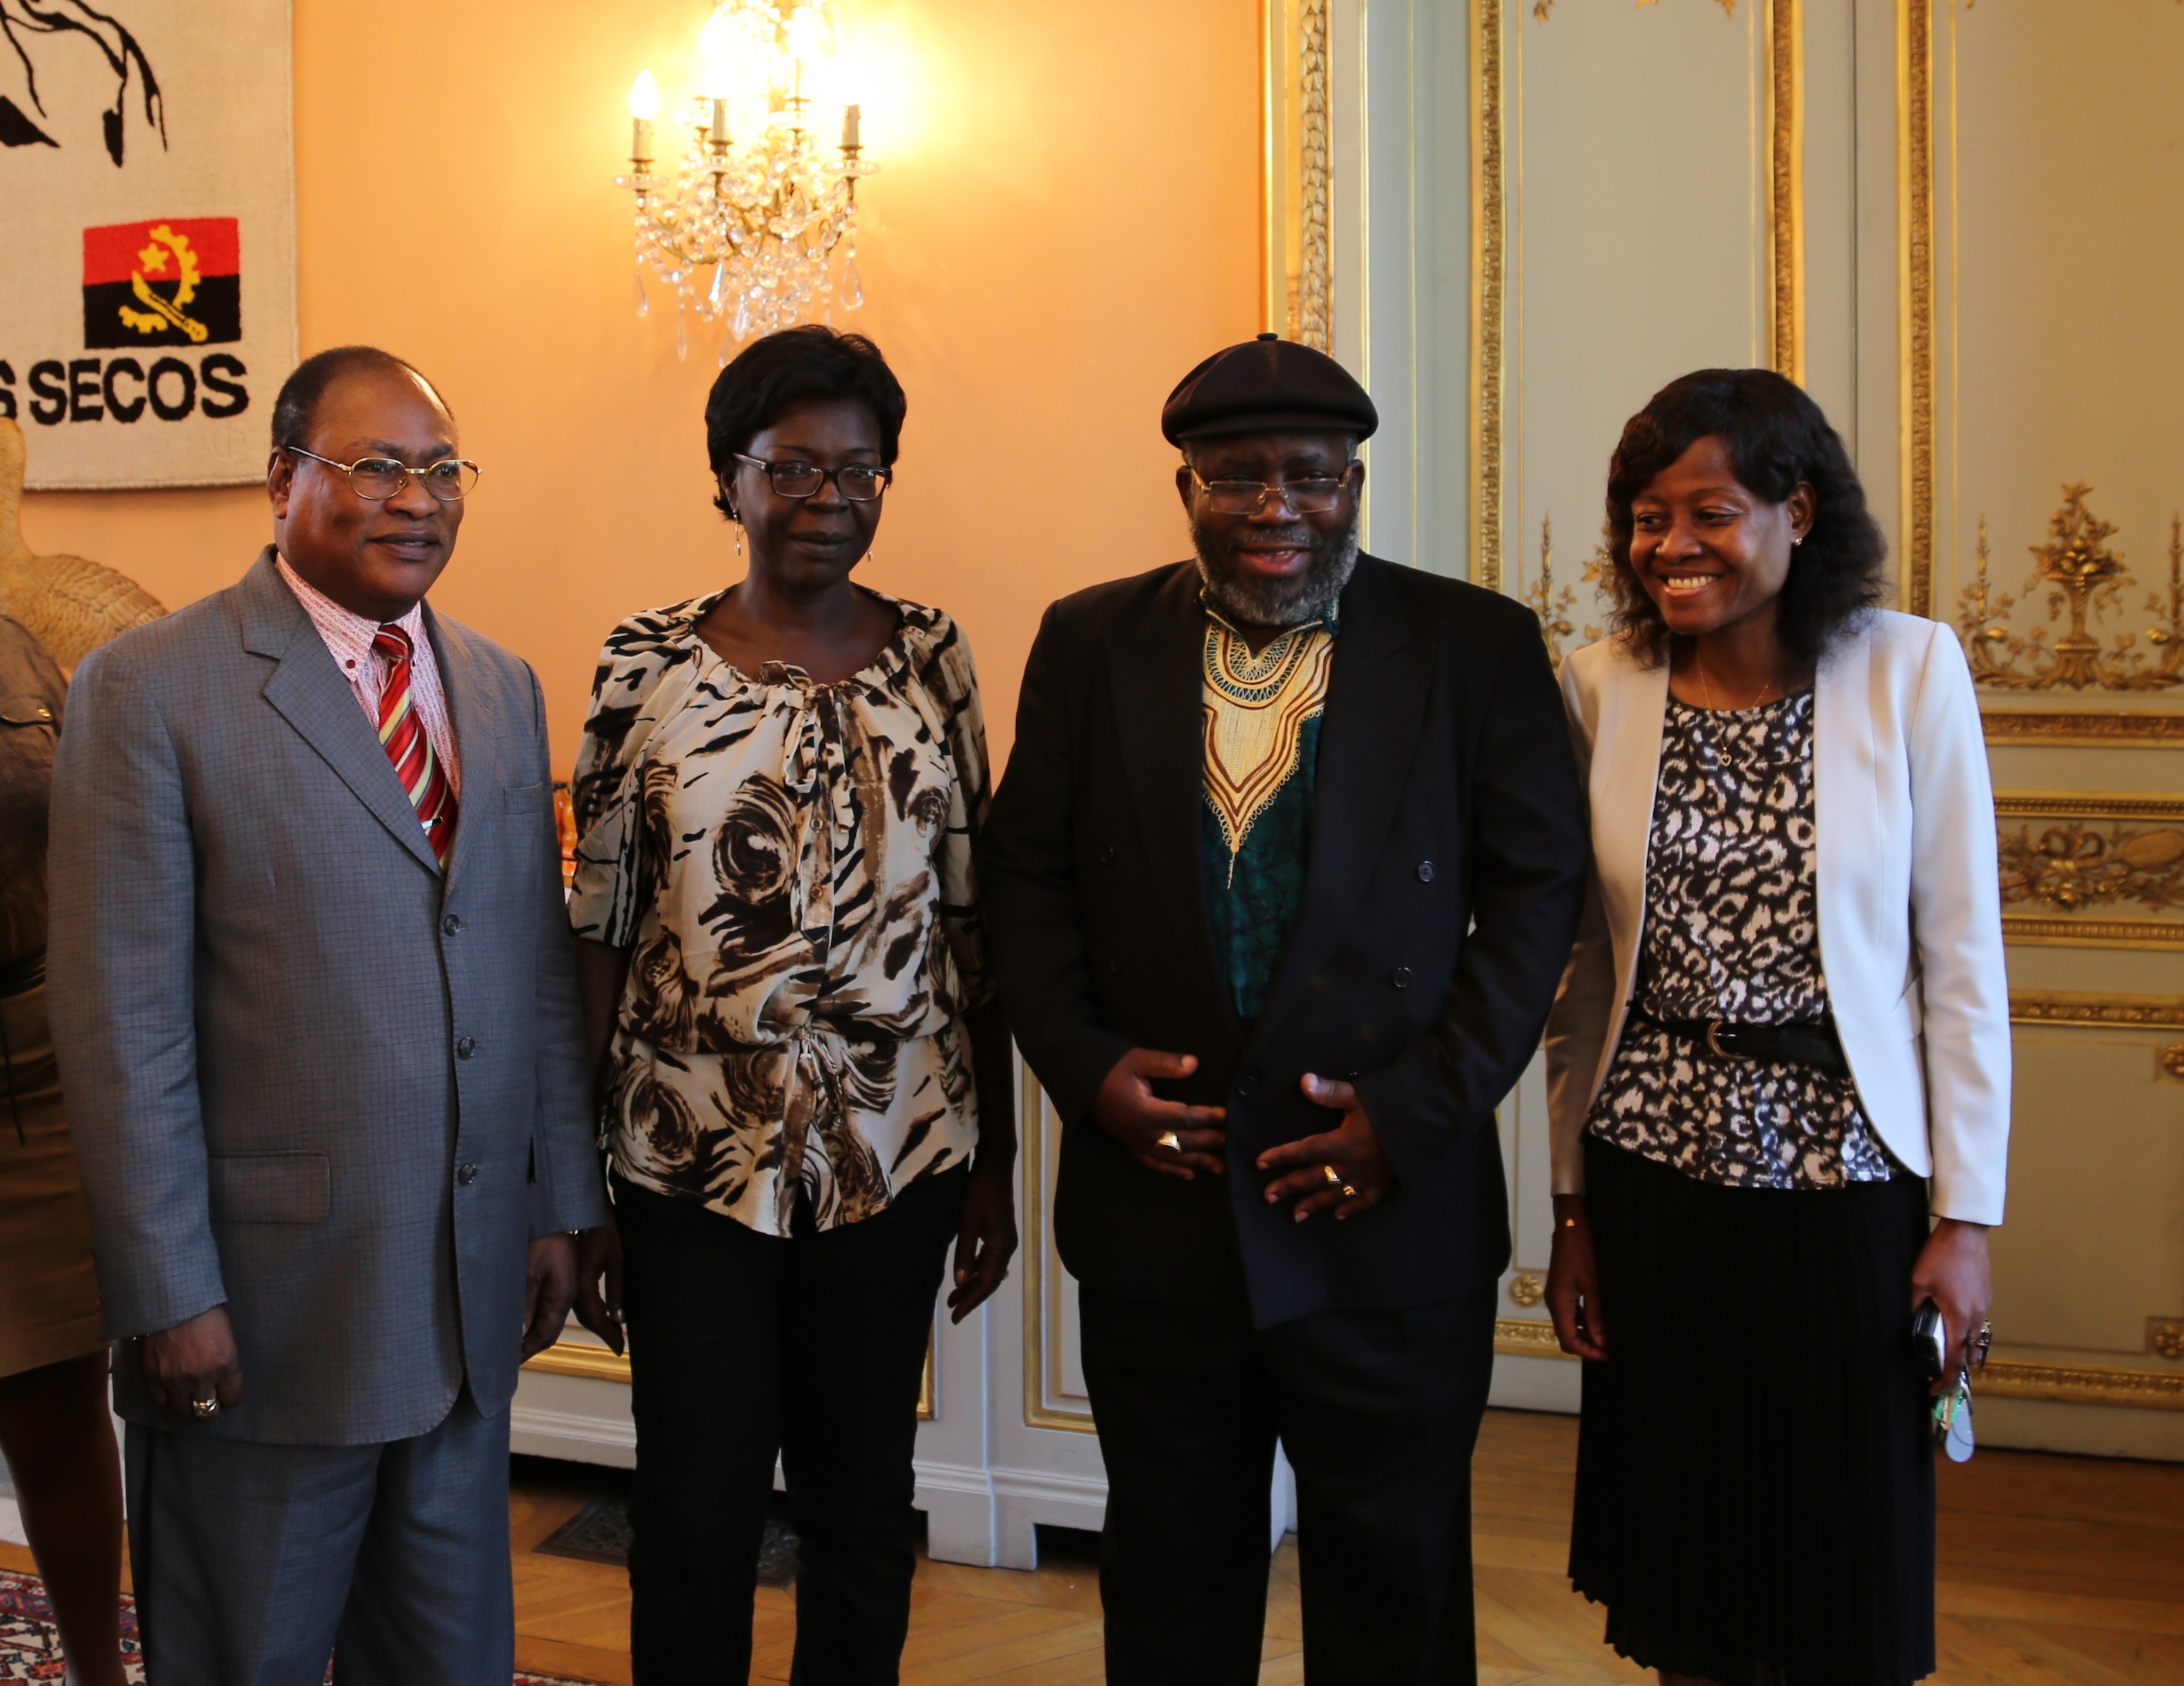 (de gauche à droite) le chargé d'affaires de l'ambassade d'Angola, la responsable de la Librairie des Dépêches de Brazzaville, le poète Lopito Feijo, et la conseillère culturelle de l'ambassade d'Angola ©Adiac 